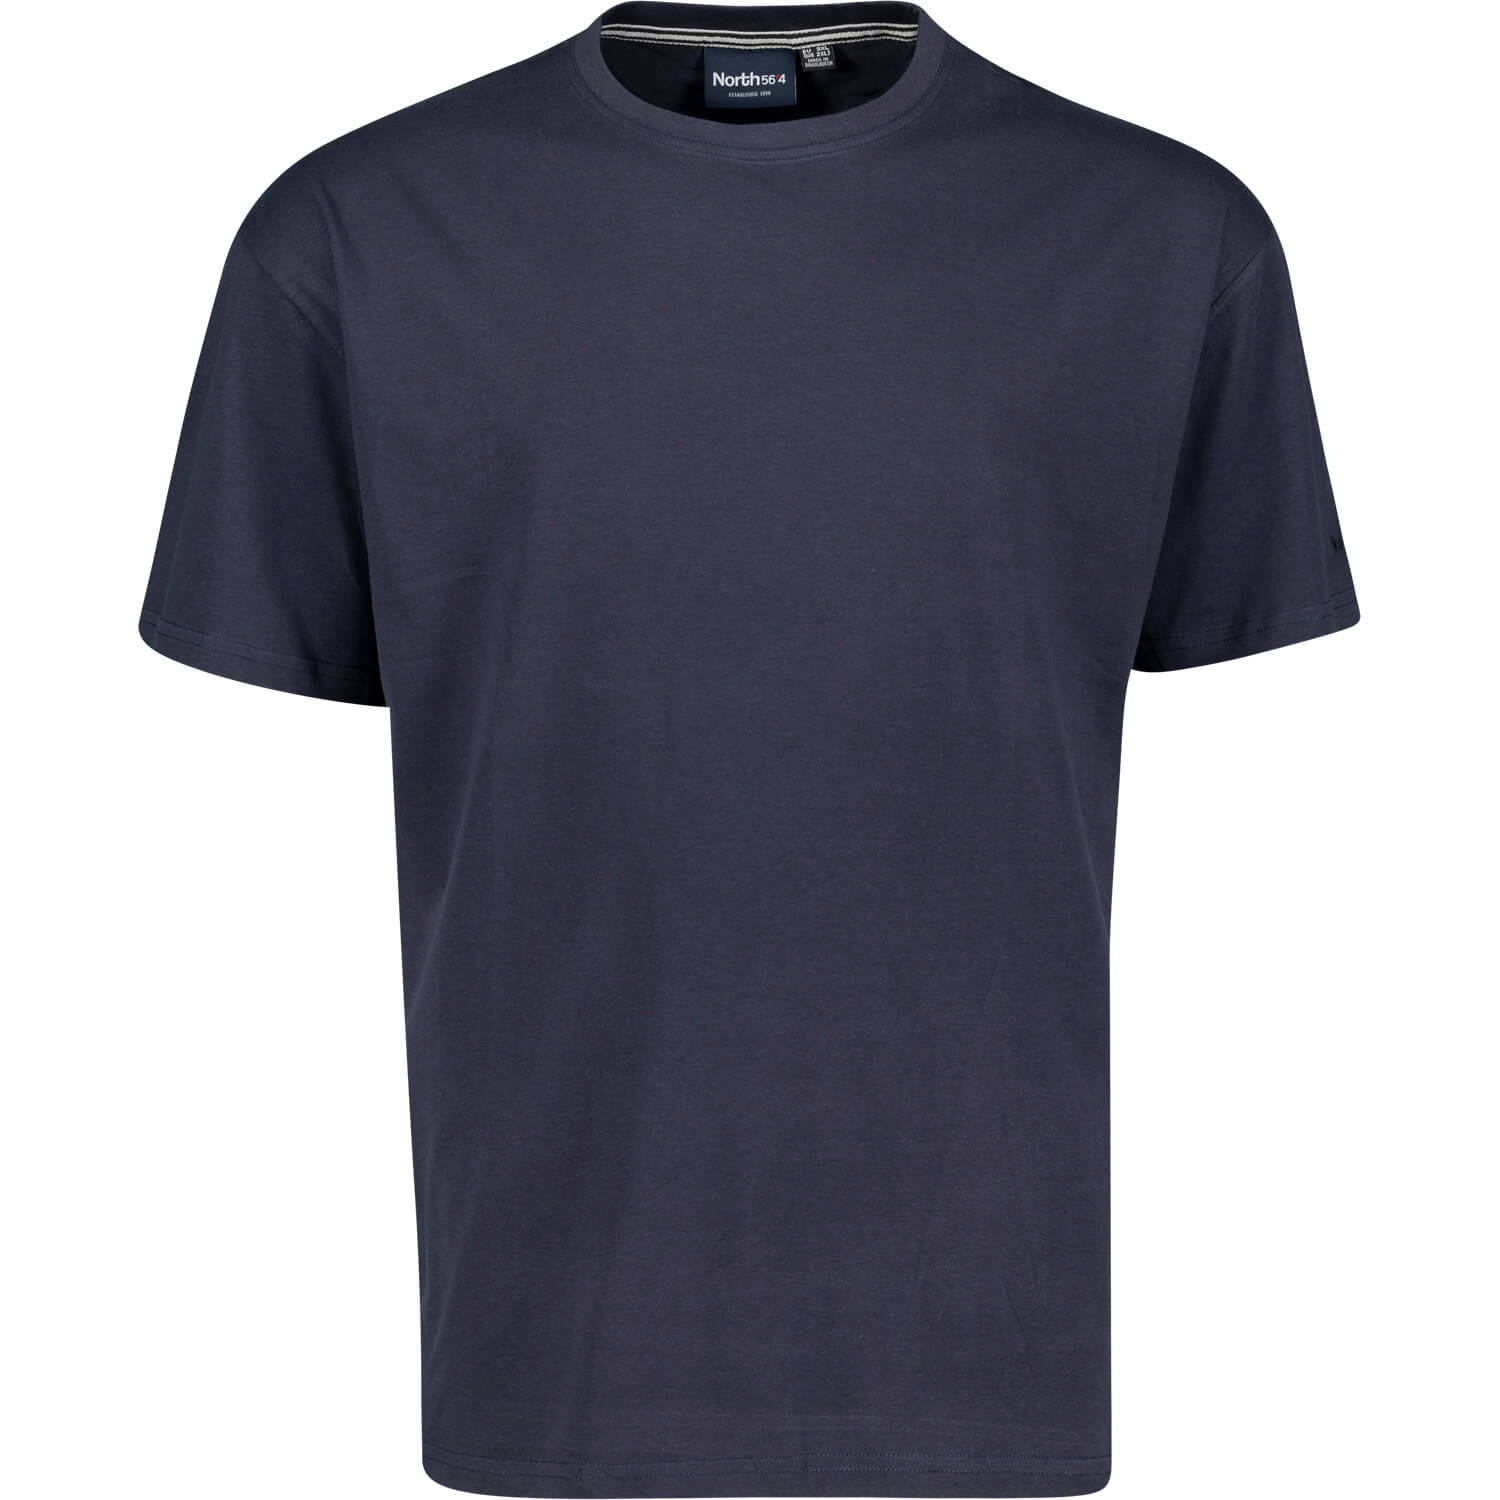 T-shirt bleu foncé avec col rond de North56°4 grandes tailles jusqu'au 8XL